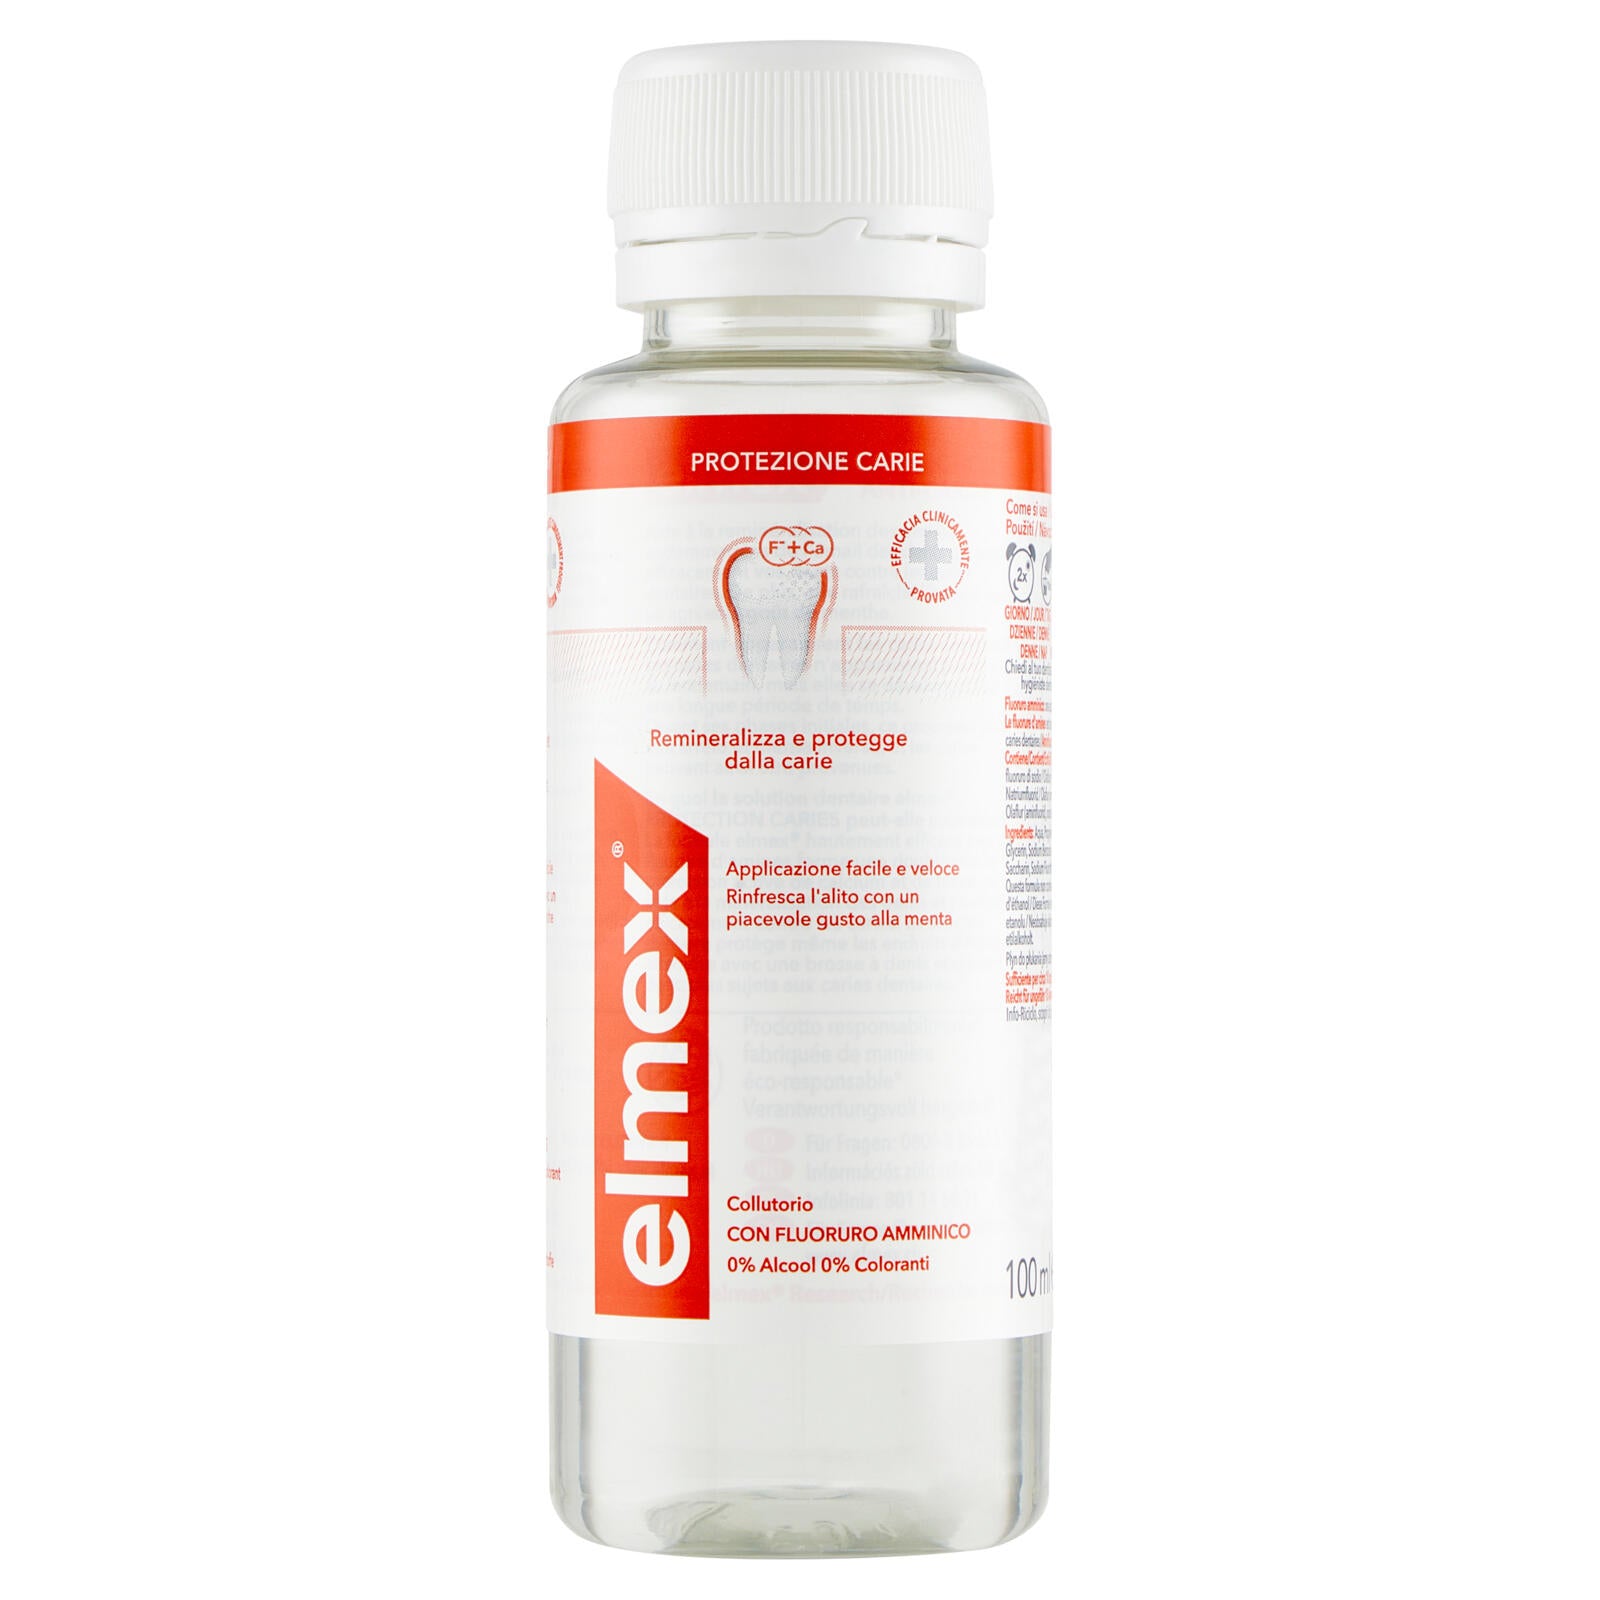 elmex collutorio Protezione Carie rinfresca l´alito 100 ml